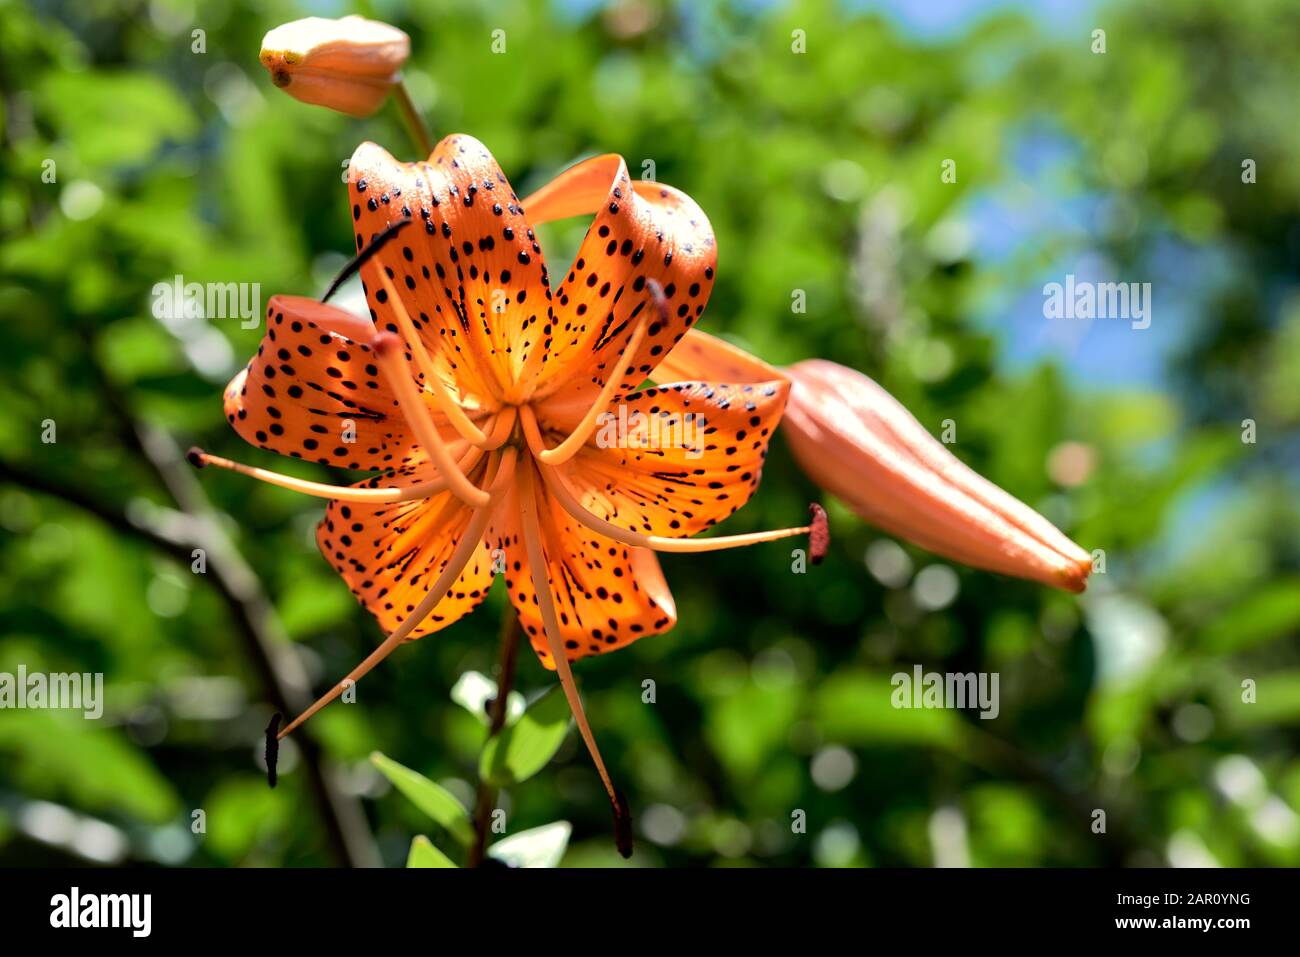 Blüte der Tiger-Lilie. Wunderschöne orangefarbene Blume mit schwarzen Punkten in der Blüte unter einer hellen Sommersonne. Natürlicher Hintergrund. Stockfoto